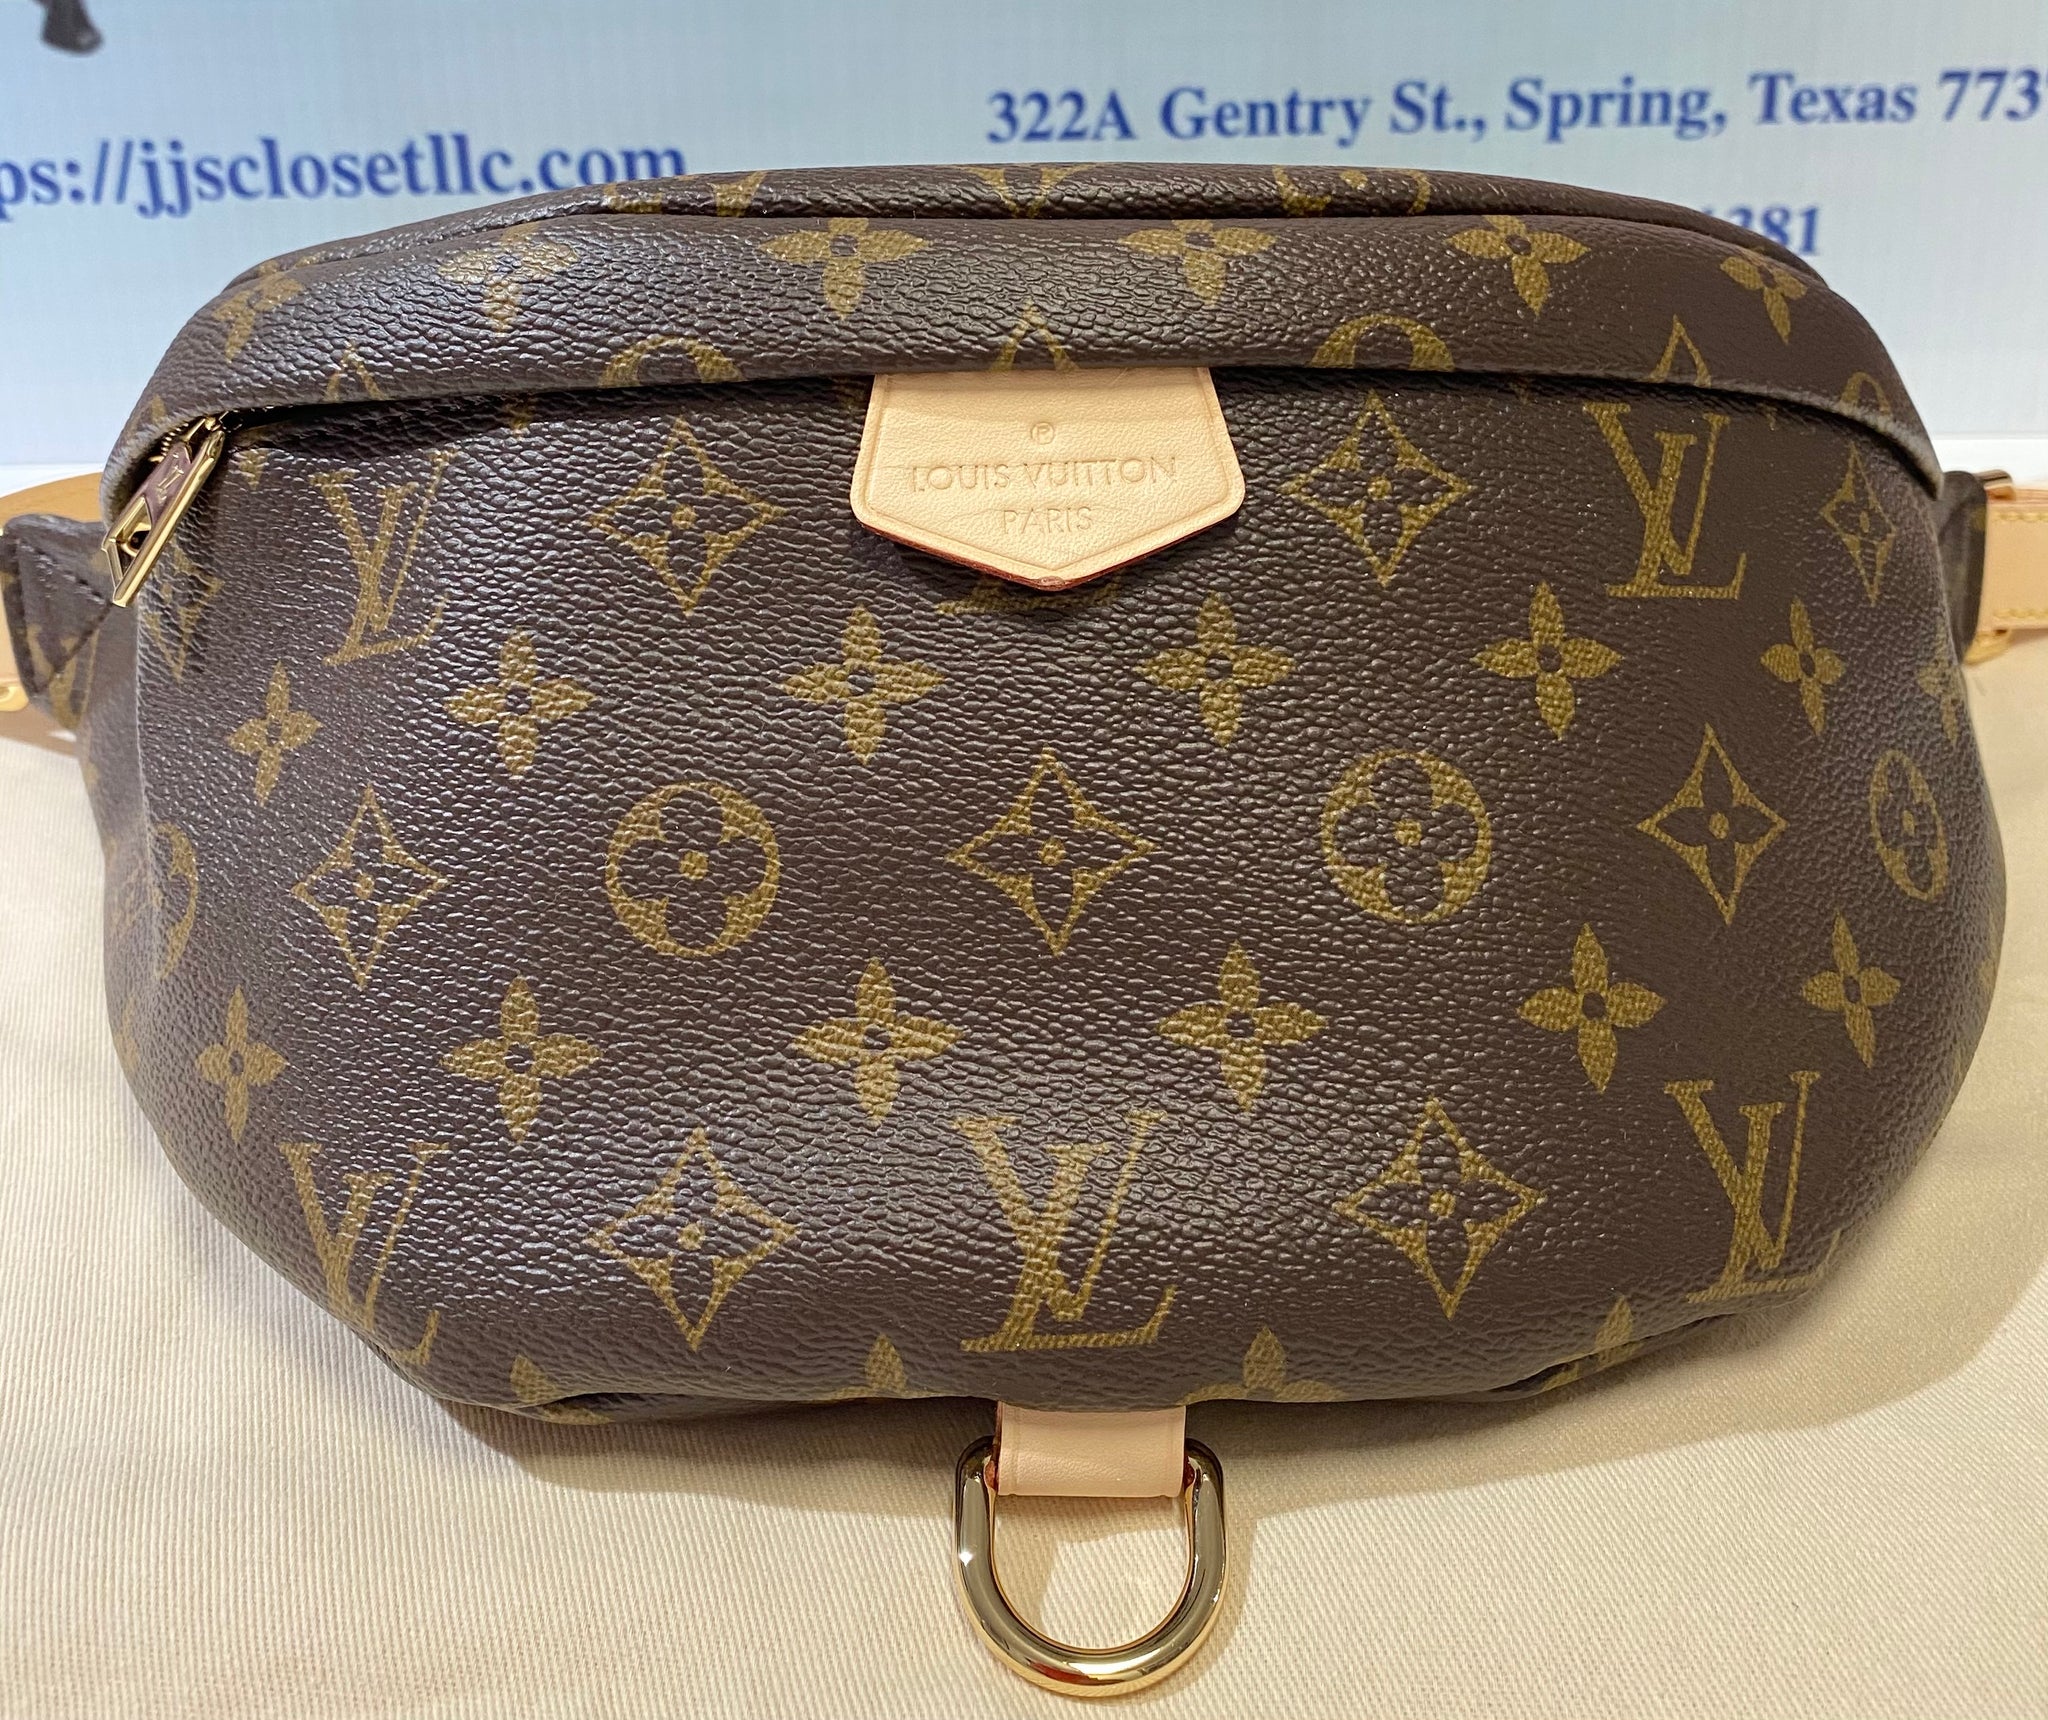 AUTHENTIC Louis Vuitton Bumbag NEW!!! (WBA281) – Jj's Closet, LLC